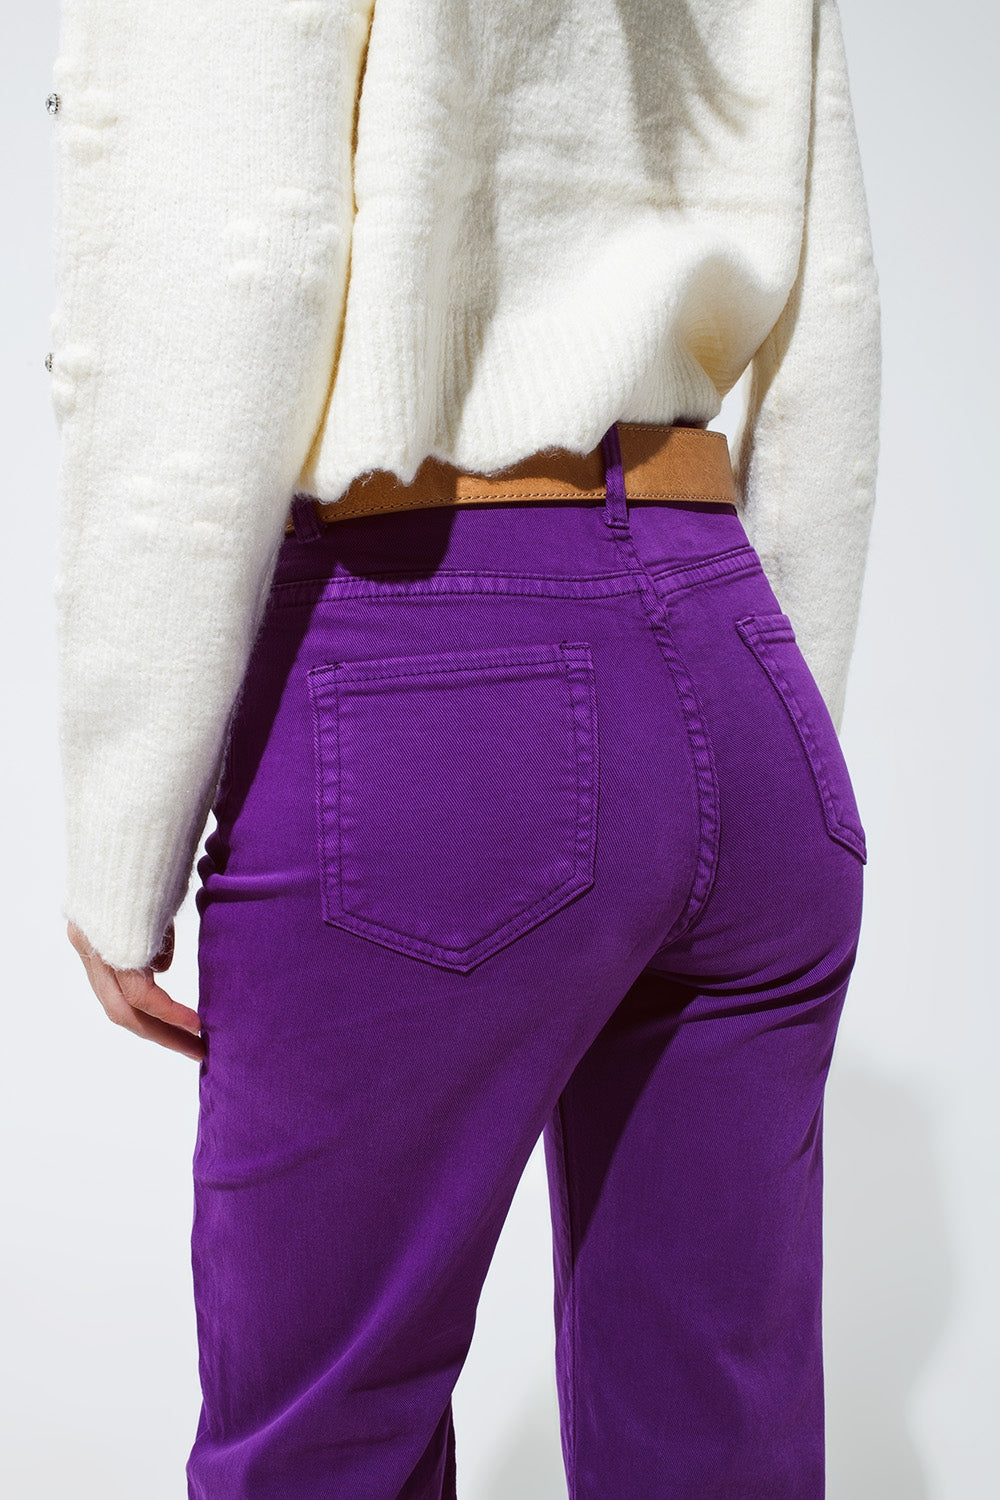 Cropped wide leg jeans in purple